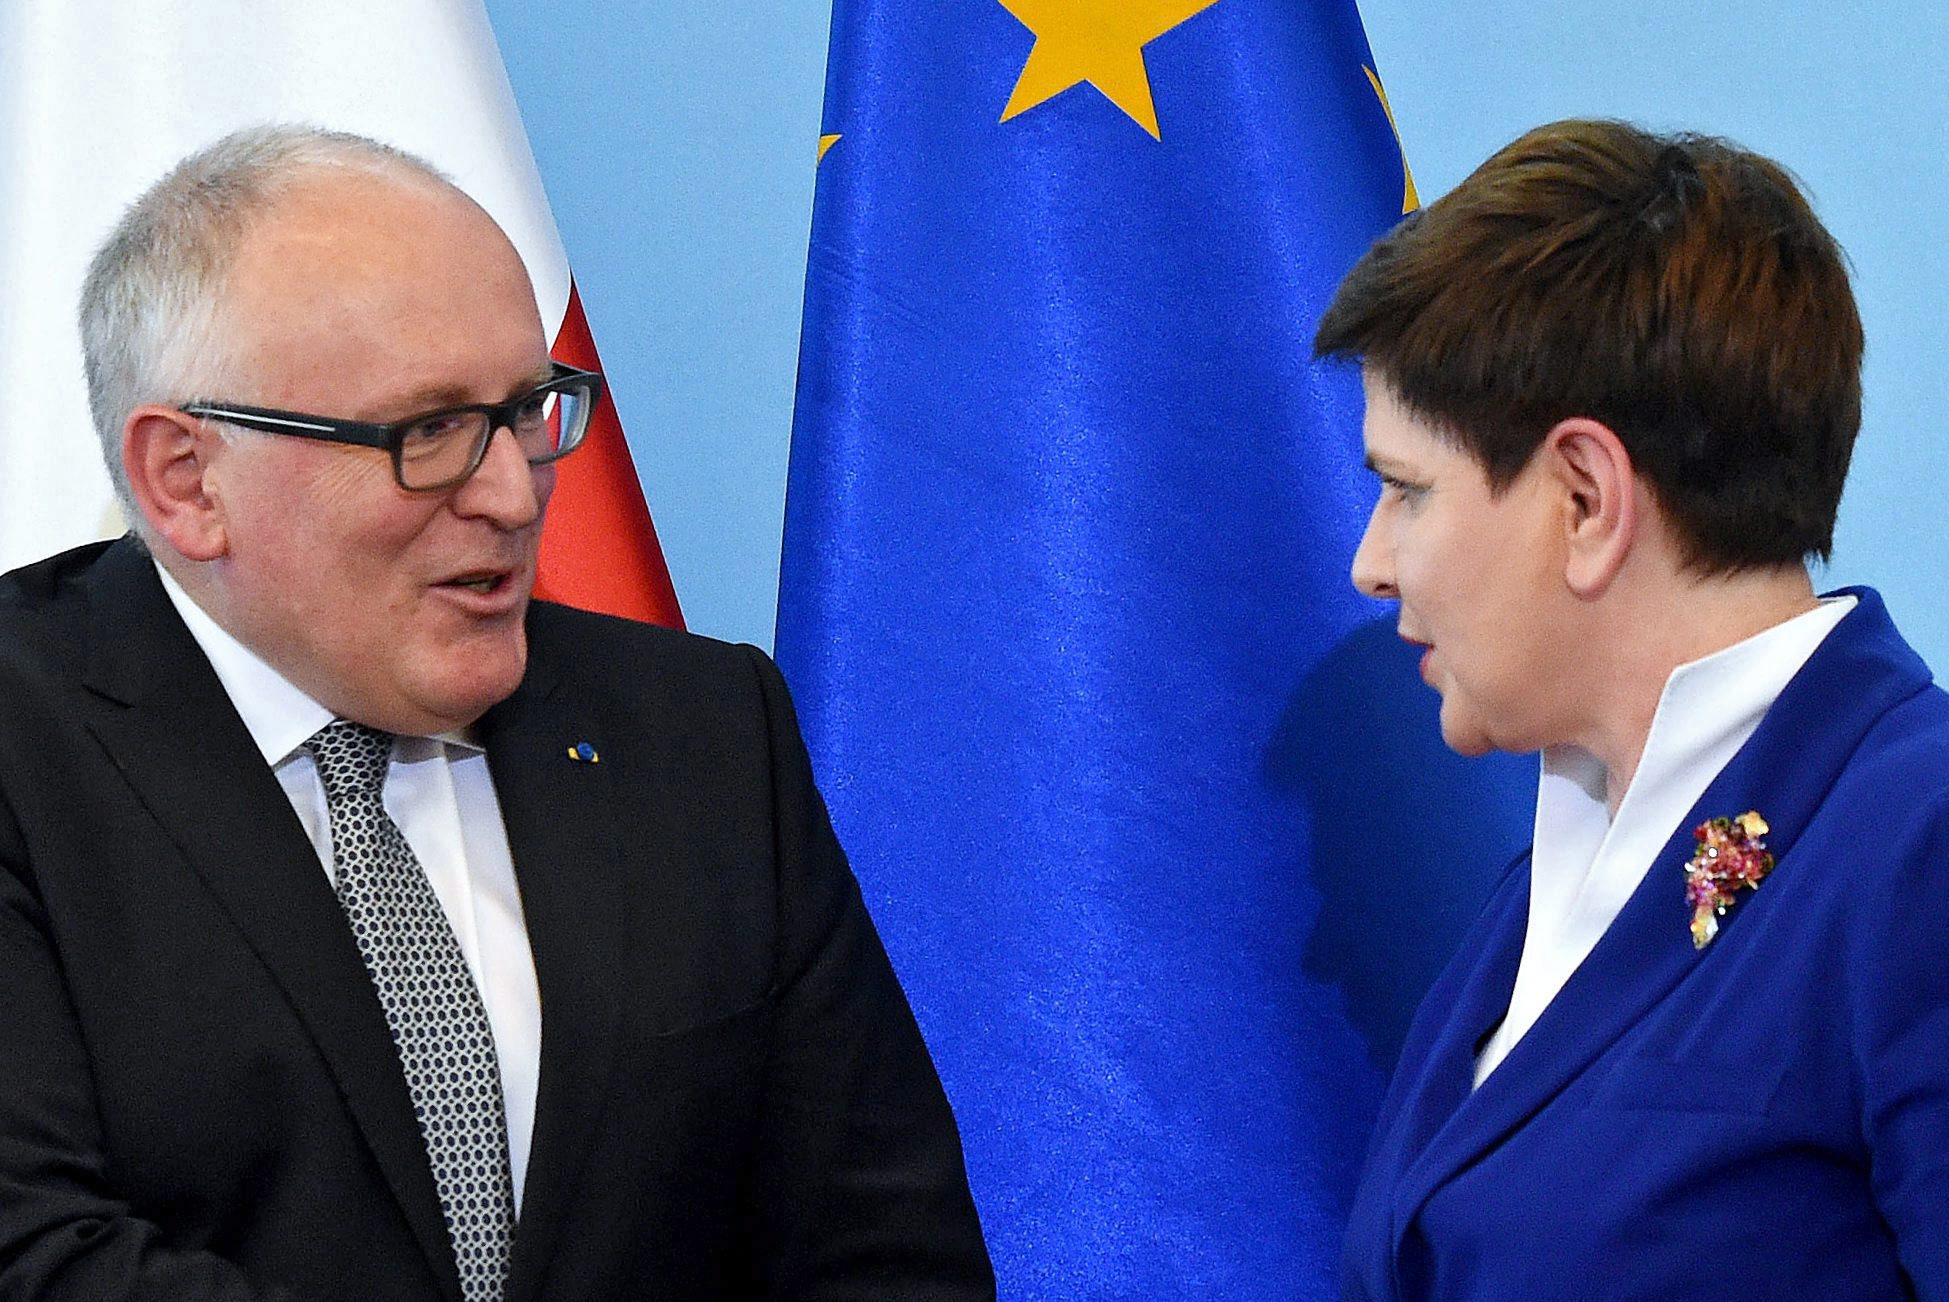 Στην Πολωνία ο Τίμερμανς (ανα)ζητώντας λύση στην συνταγματική κρίση